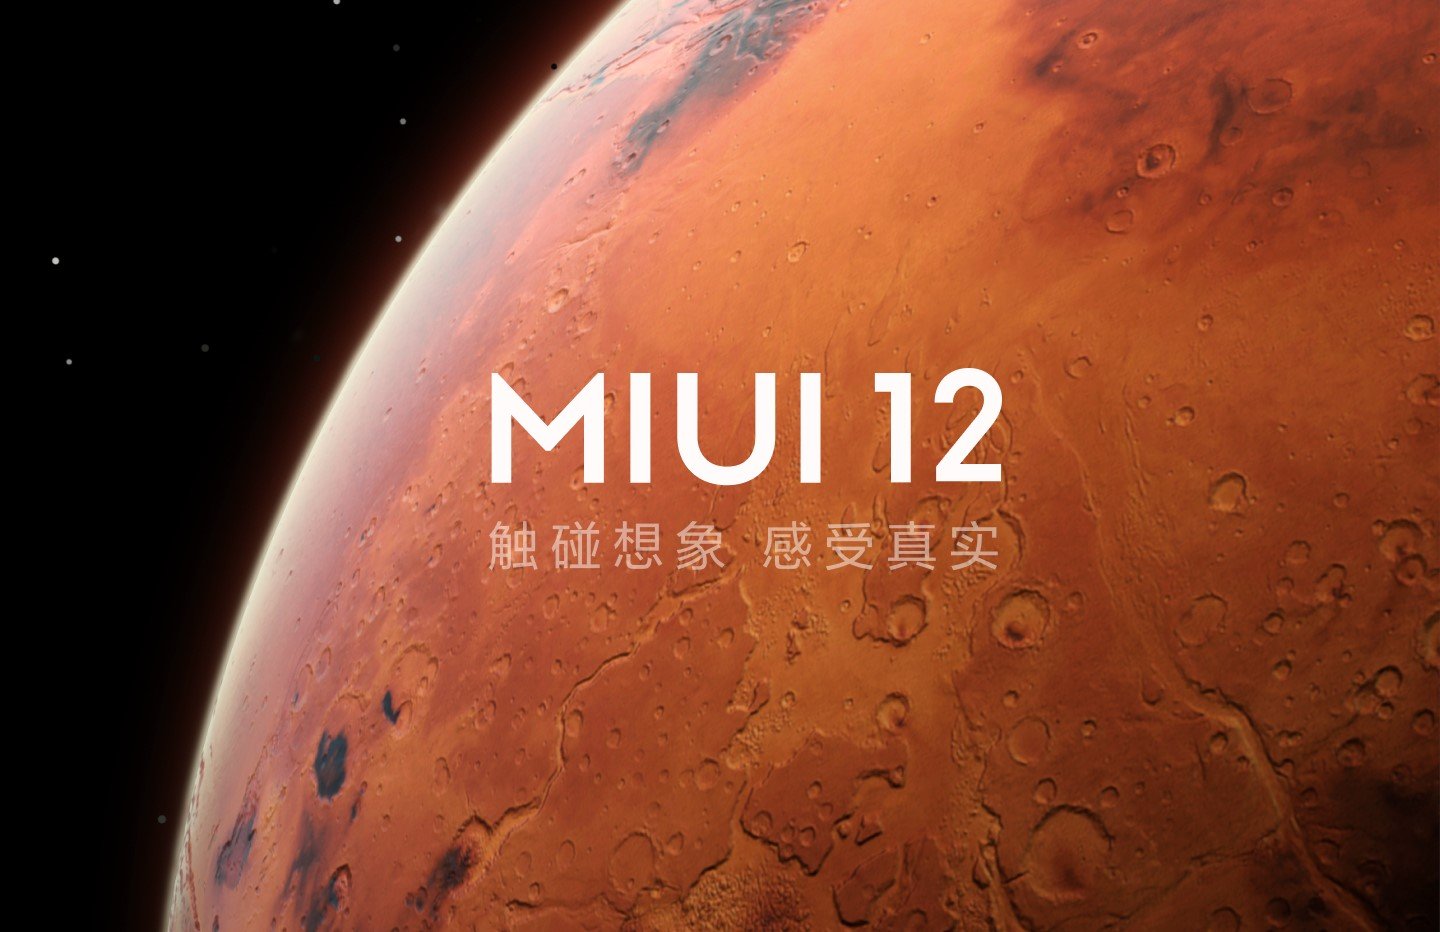 Versione stabile MIUI 12.5 chì vene à a fine di ferraghju 2021